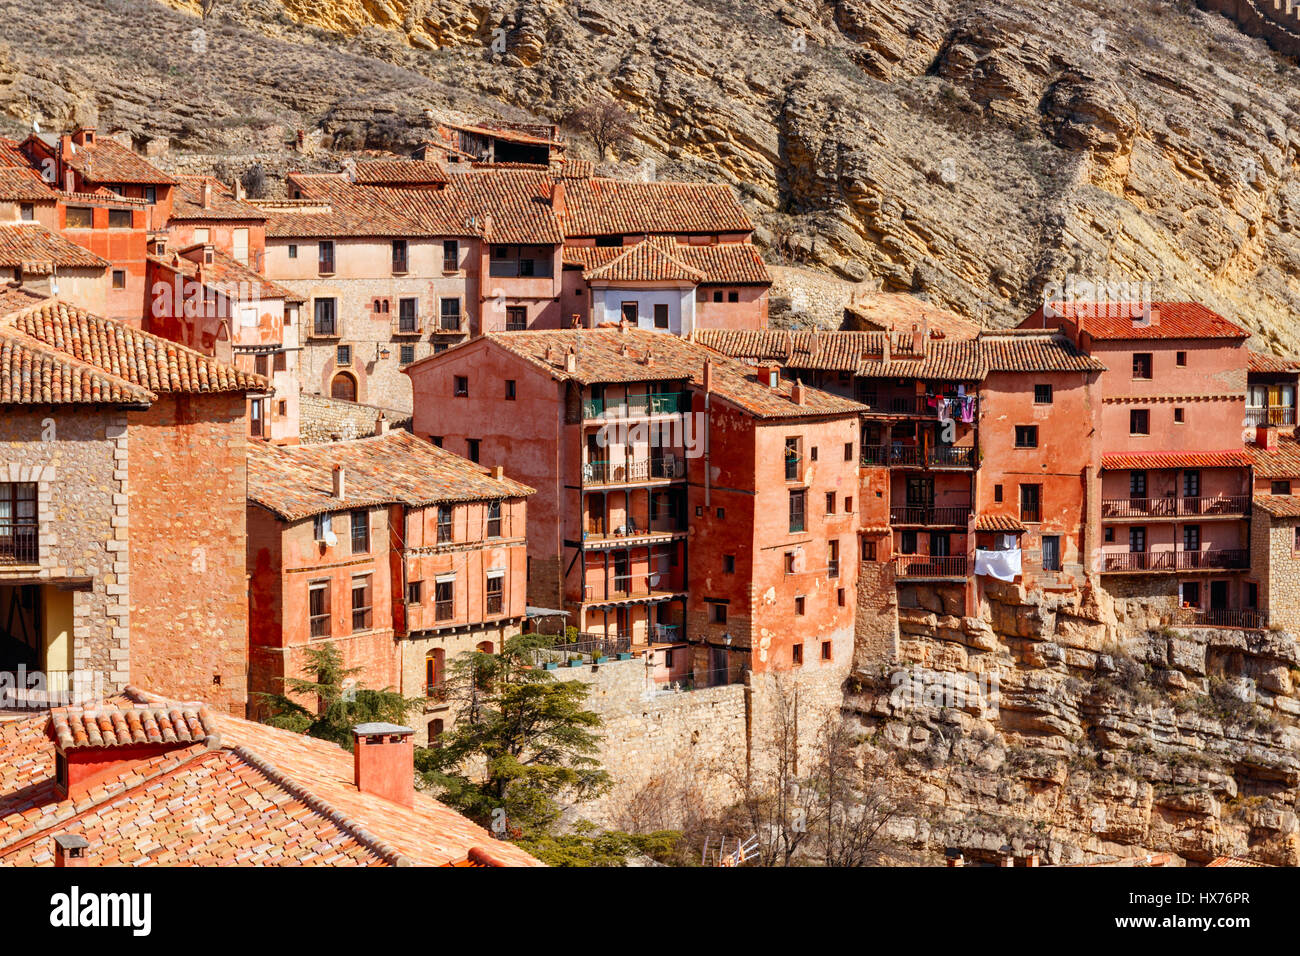 Häuser des mittelalterlichen Dorfes betrachtet Albarracin, gegen den steilen Hügel gebaut an einem sonnigen Tag. ALBARRACIN liegt in der Provinz Teruel, Spanien Stockfoto